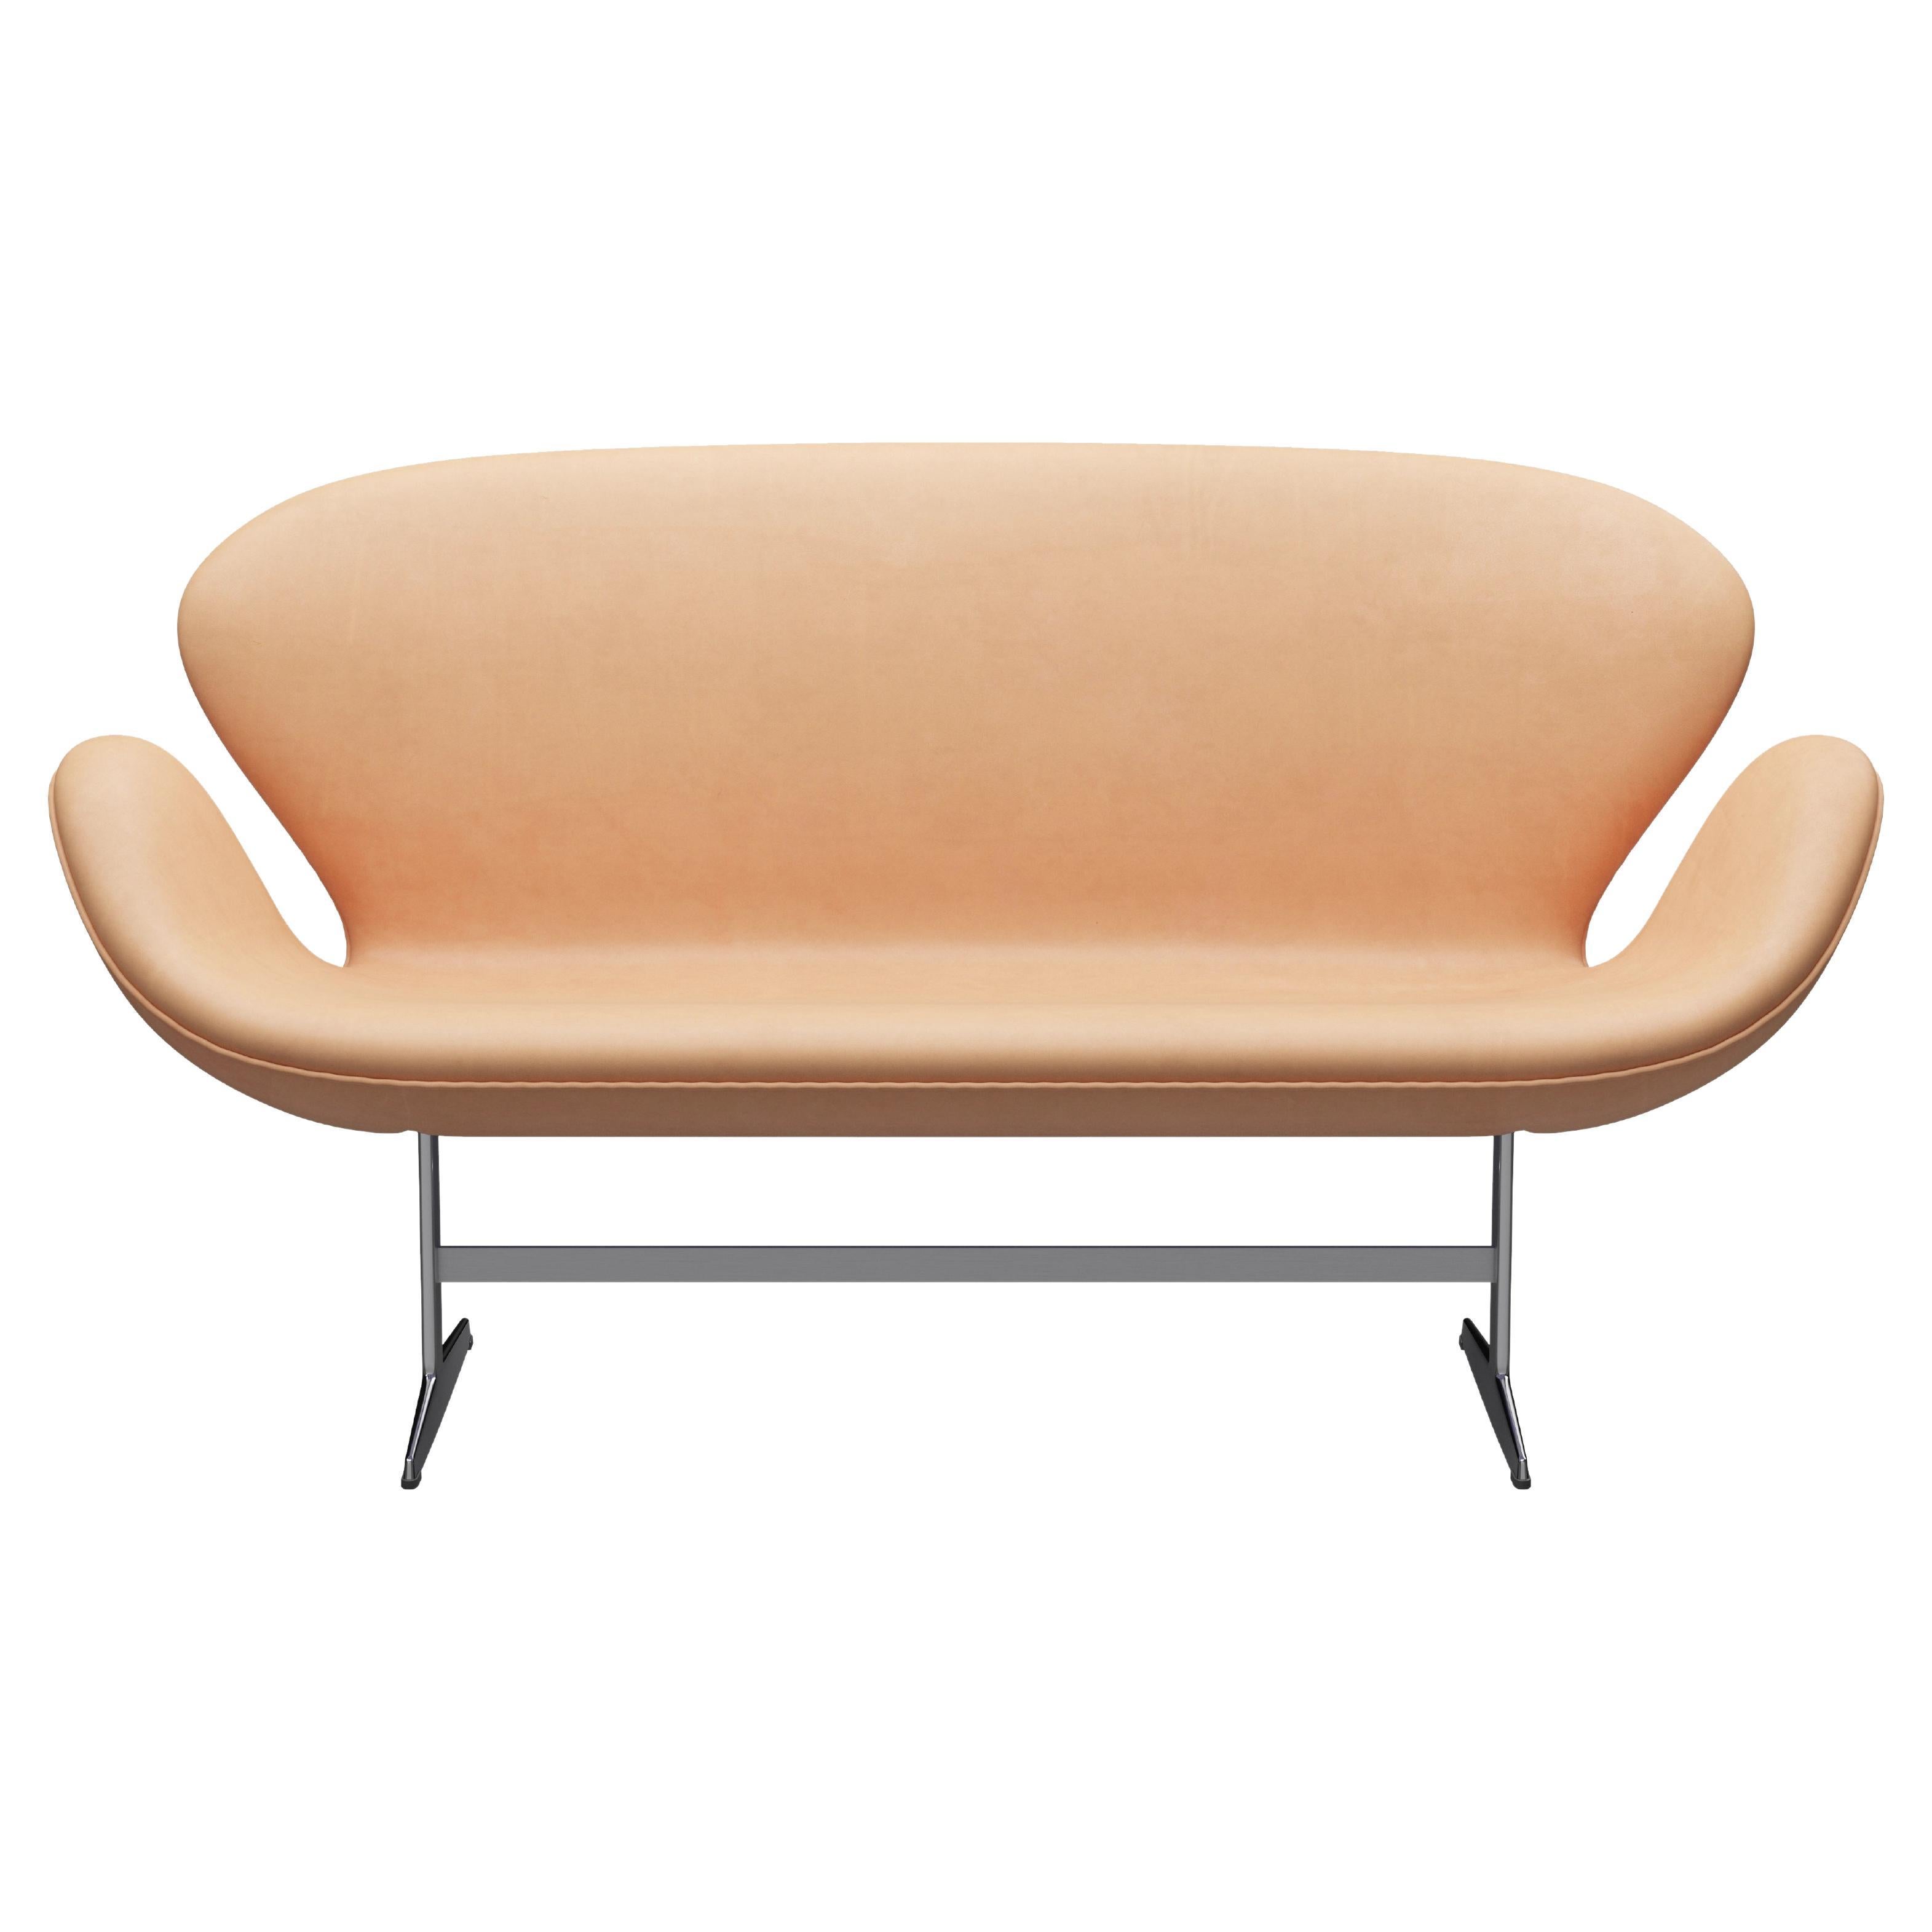 Arne Jacobsen 'Swan' Sofa for Fritz Hansen in Leather Upholstery (Cat. 5)